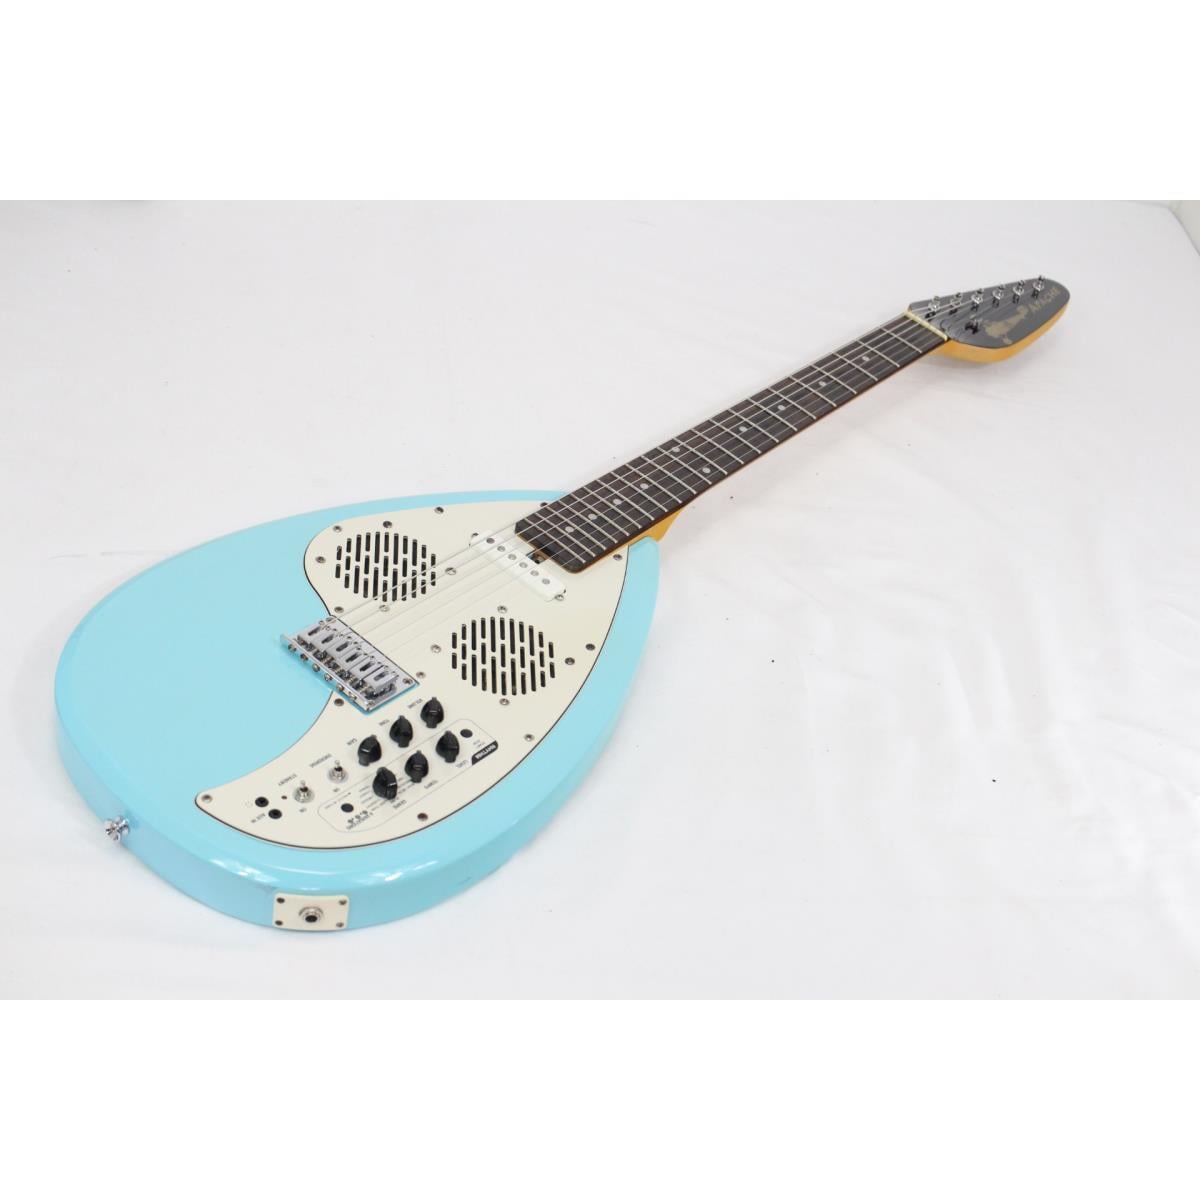 VOX APACHE-1 アンプ内蔵ミニギター トラベルギター - エレキギター